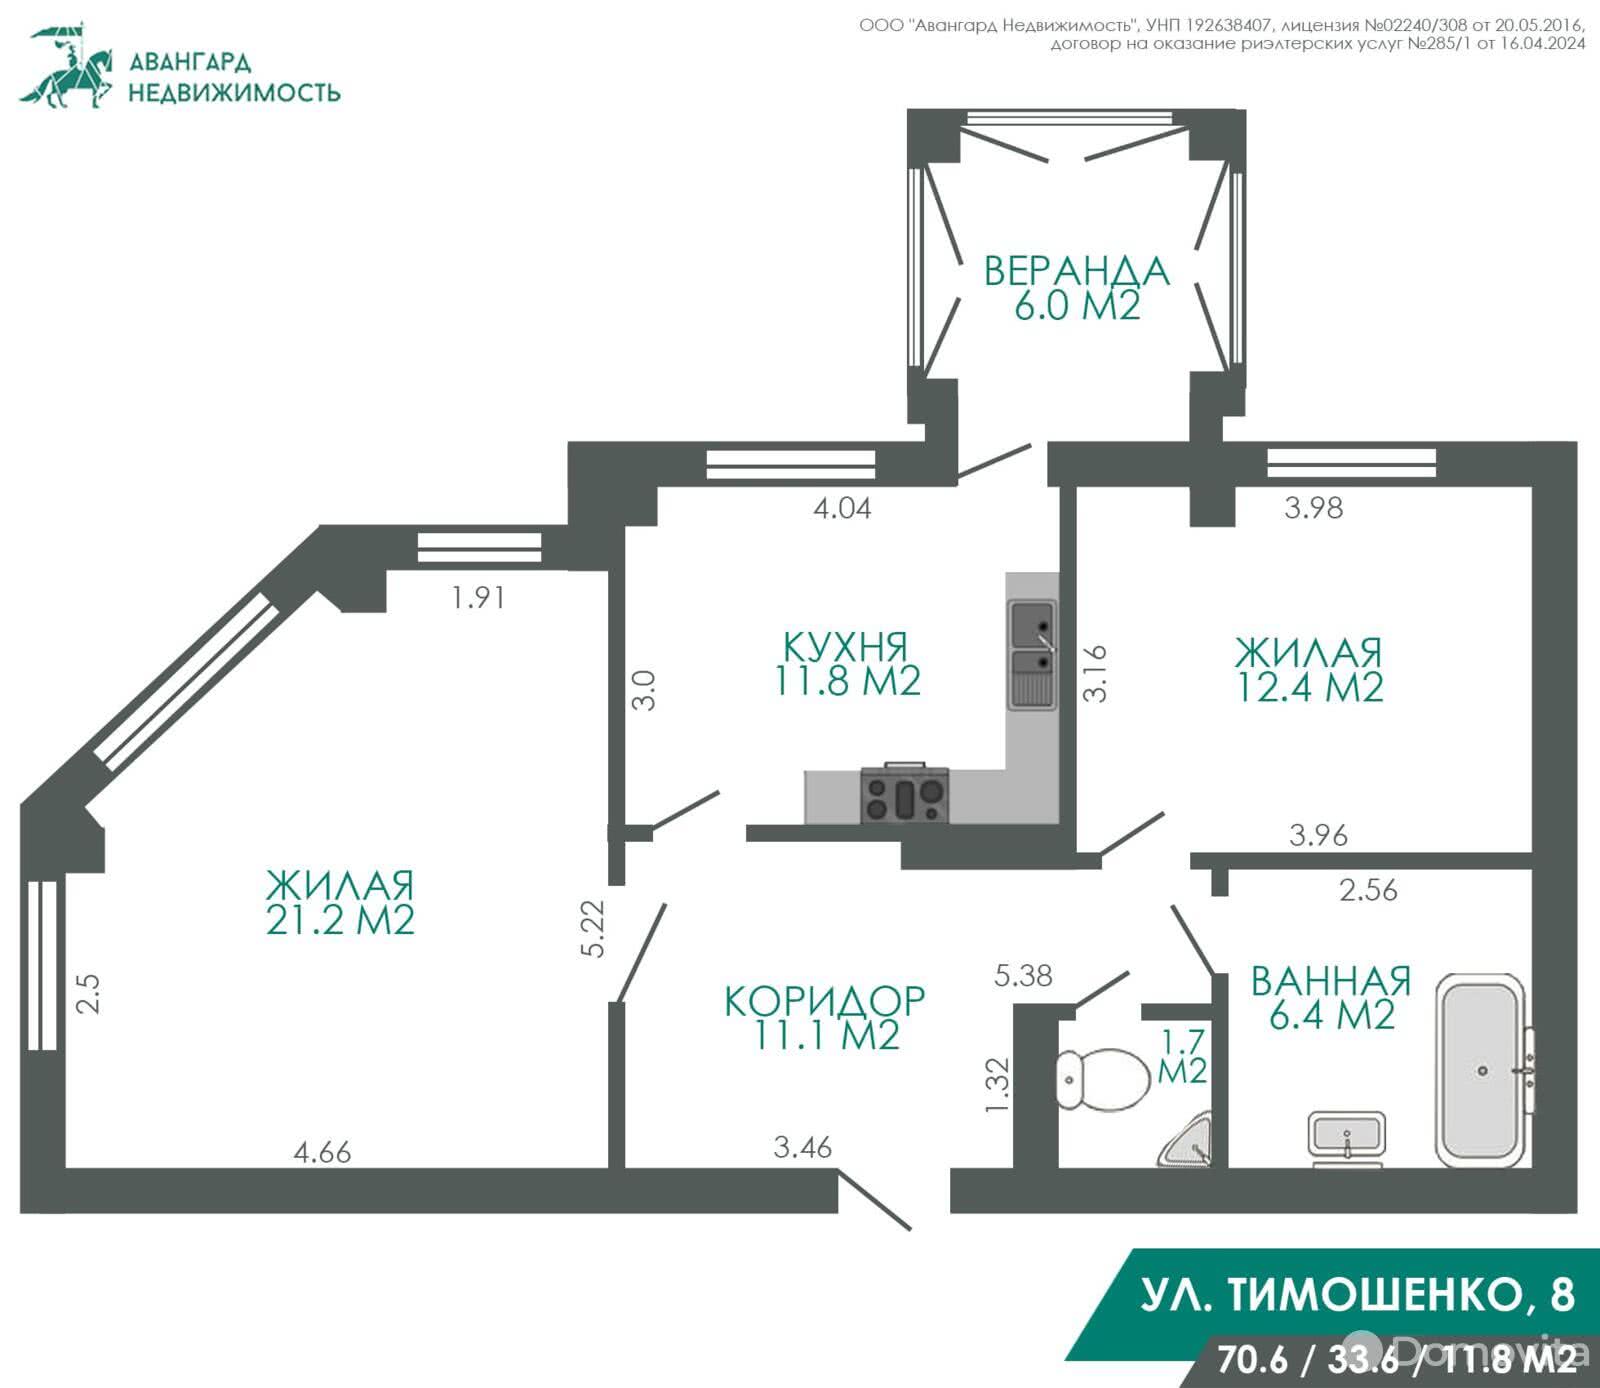 квартира, Минск, ул. Тимошенко, д. 8, стоимость продажи 367 954 р.